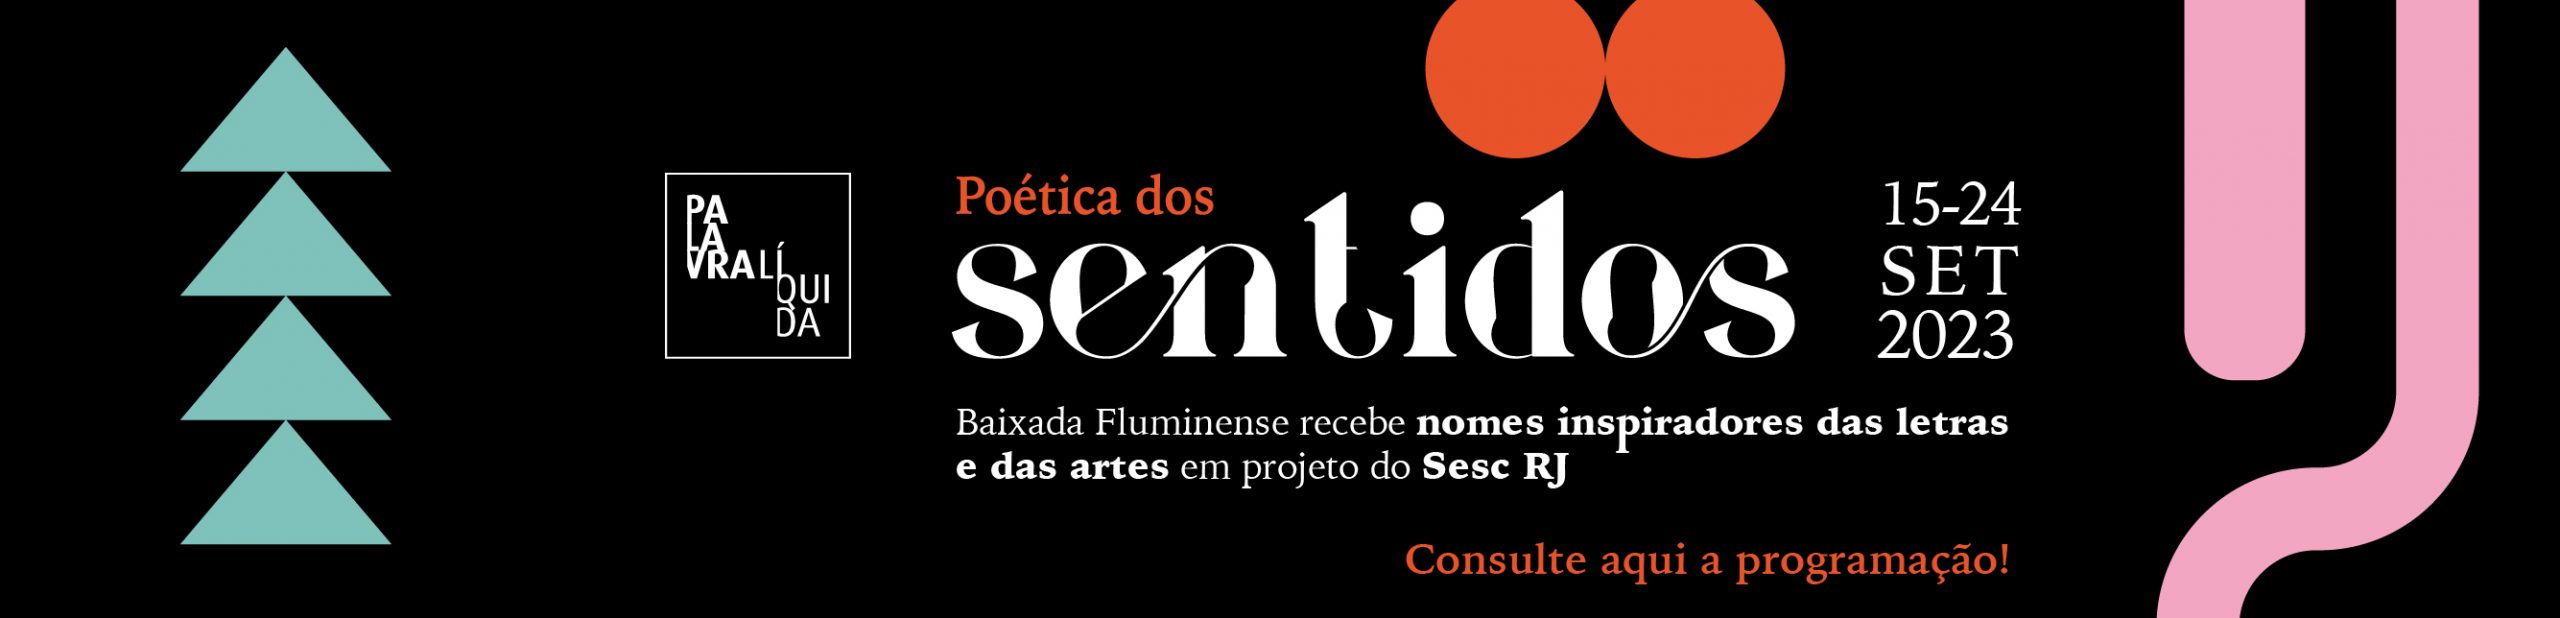 Baixada Fluminense recebe nomes inspiradores das letras e das artes em projeto do Sesc RJ